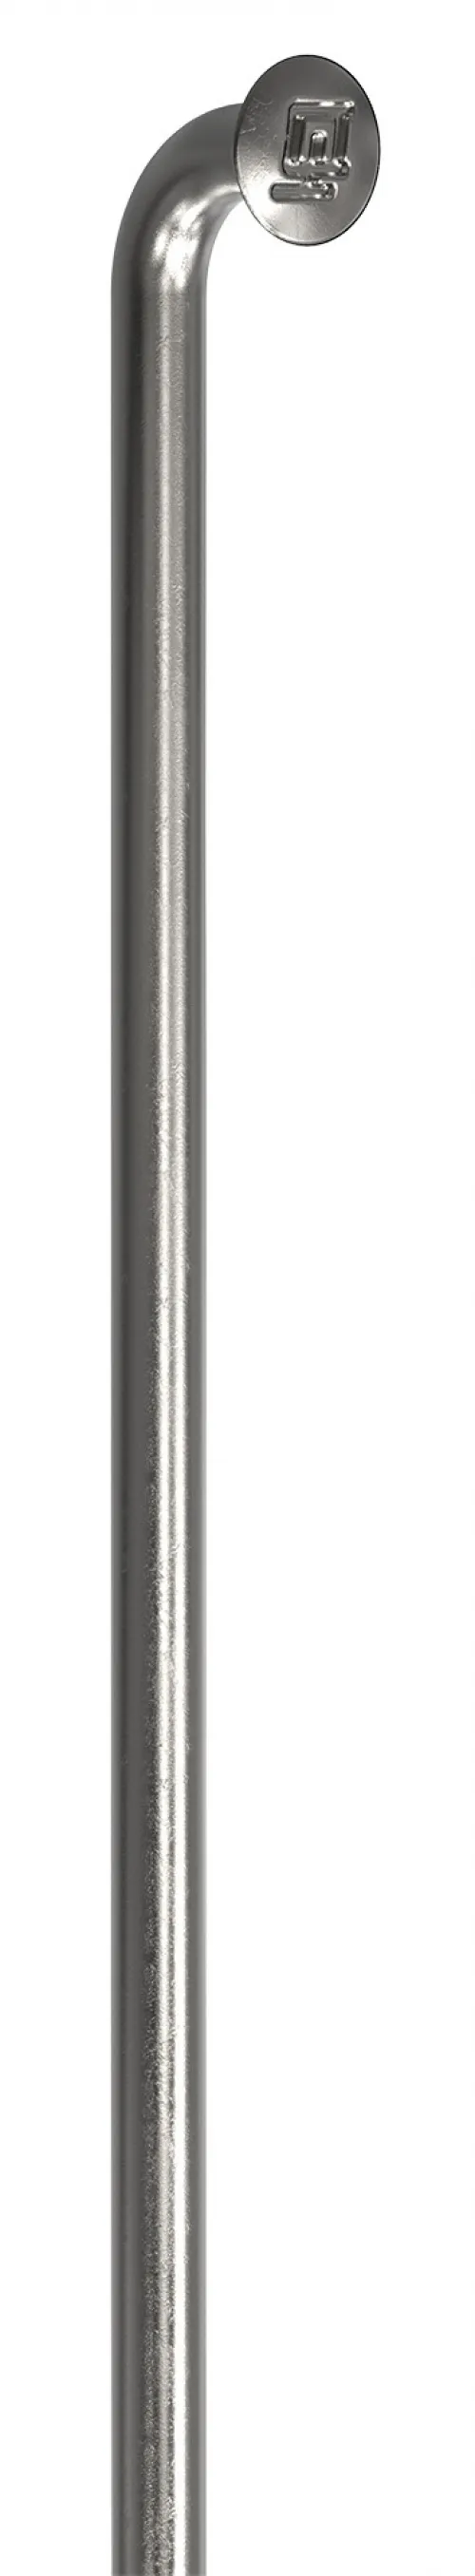 Спицы DT Swiss Champion (J-bend) 2.0mm x 262mm silver 20шт